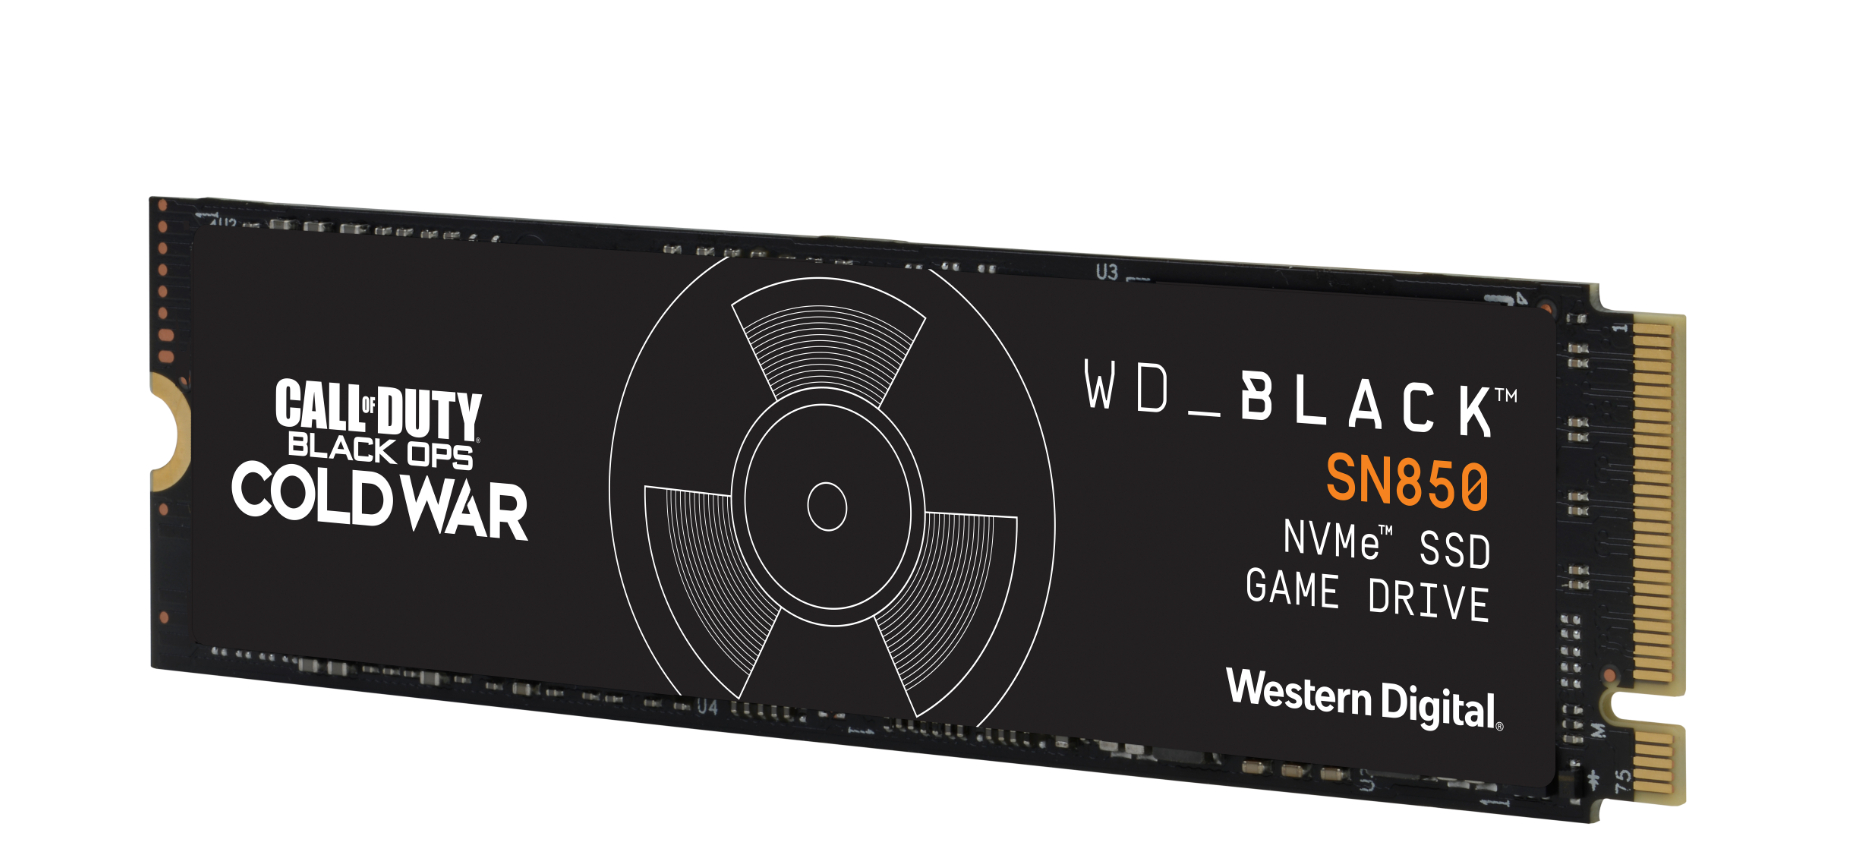 Call intern SN850 SSD WD_BLACK Speicher Retail, 1 TB M.2, of Edition Duty